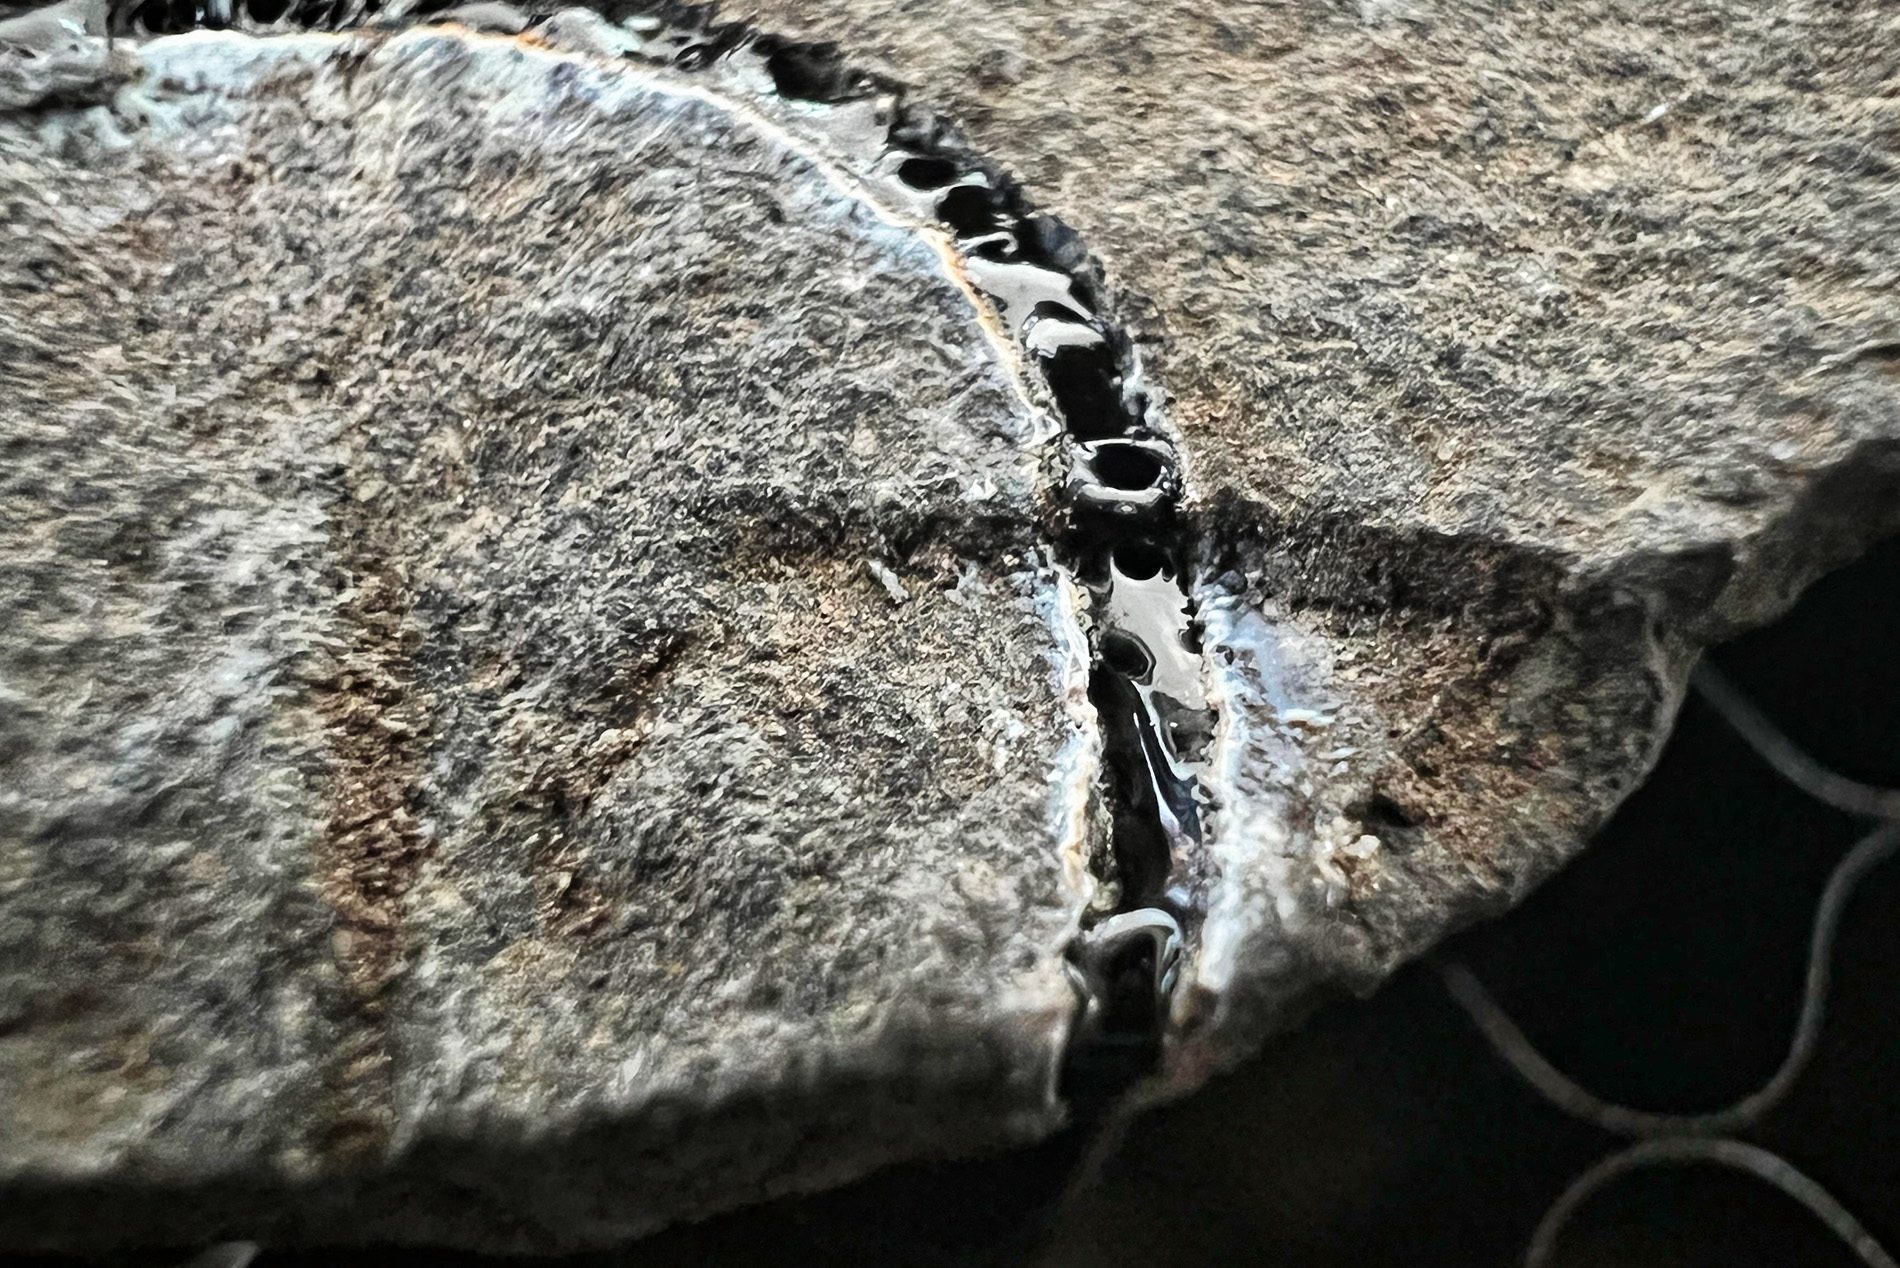 Das Schneiden von Stein funktioniert nicht, weil das Material "nur" schmilzt, aber nicht verdampft, weshalb der Laserstrahl nicht weiter eindringen kann.